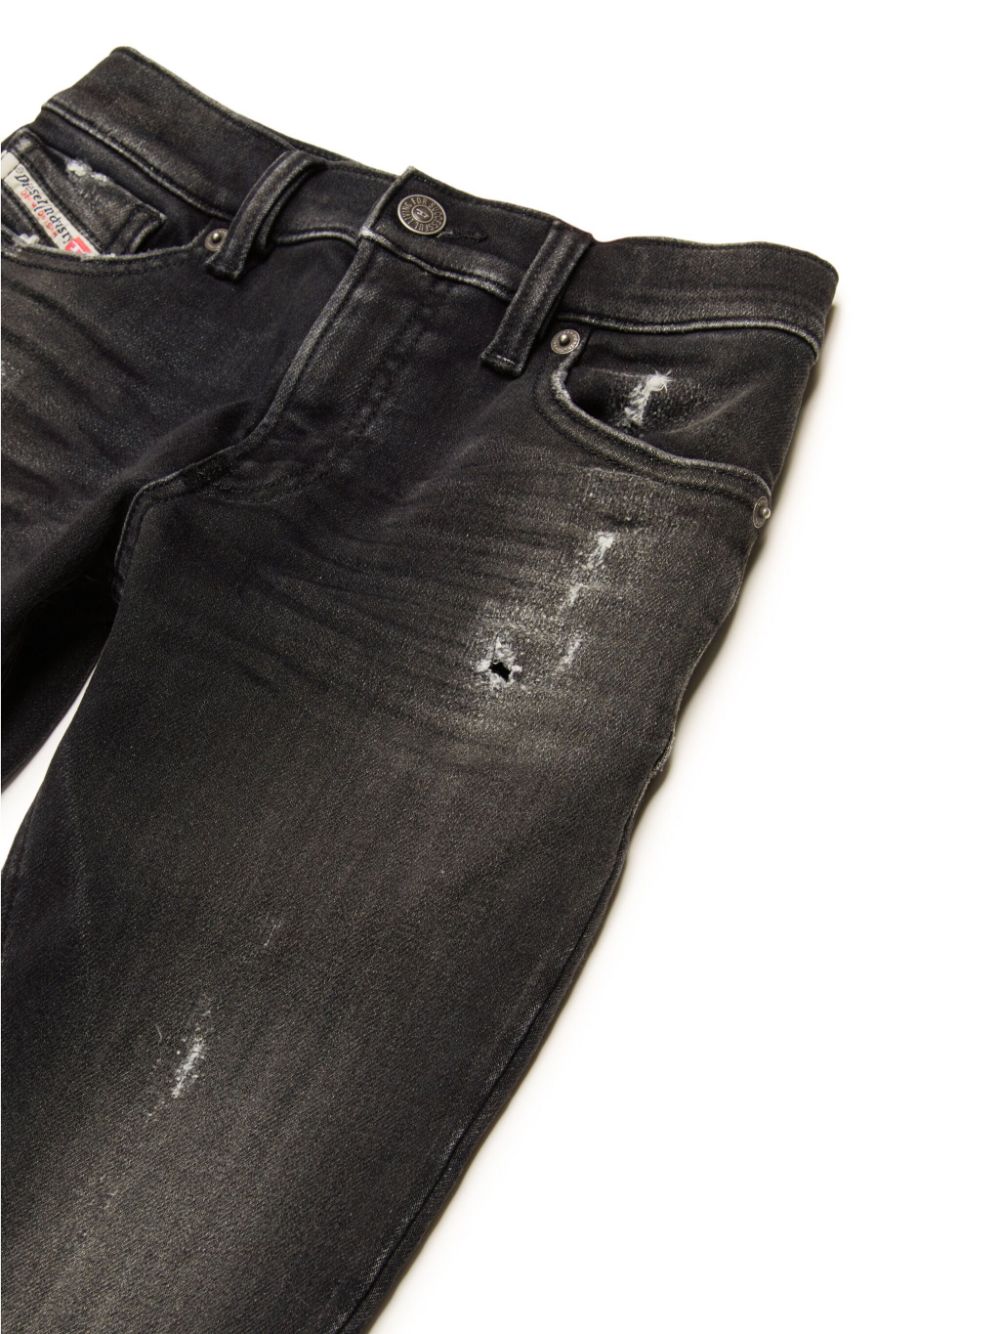 Black denim jeans for boys